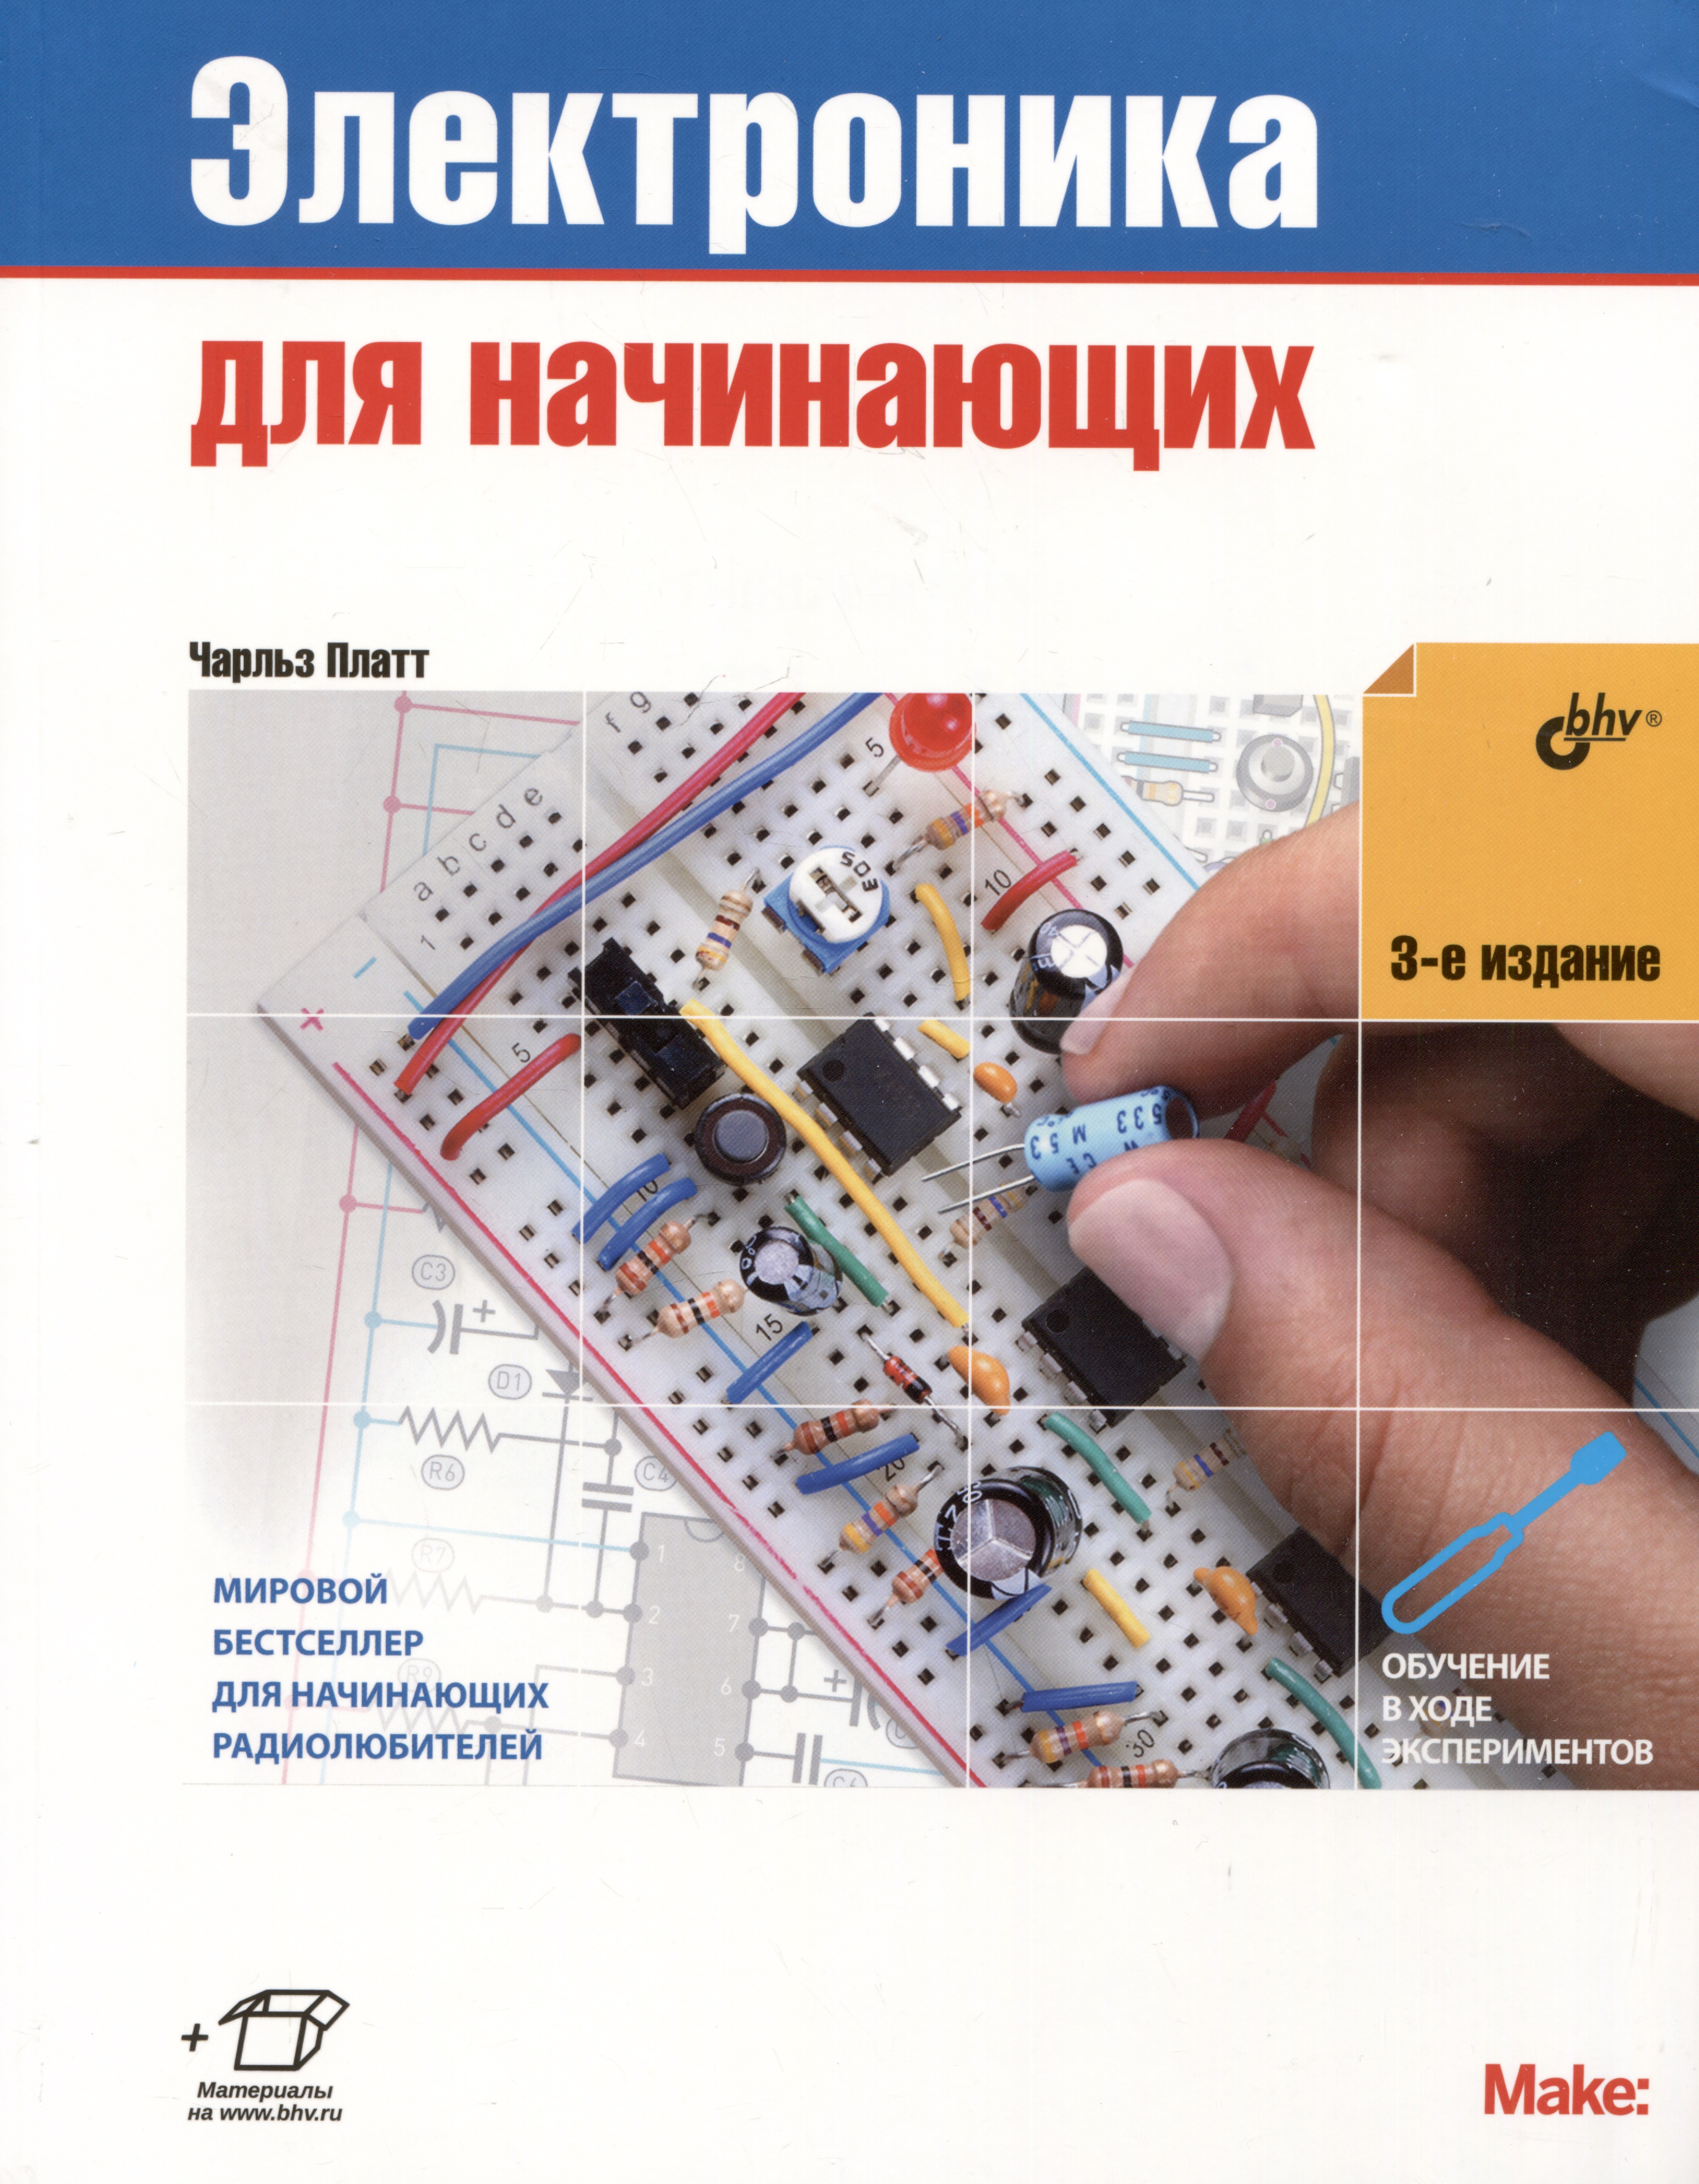 платт чарльз электроника для начинающих 2 0 большой набор электронных компонентов книга 28 экспериментов Платт Чарльз Электроника для начинающих